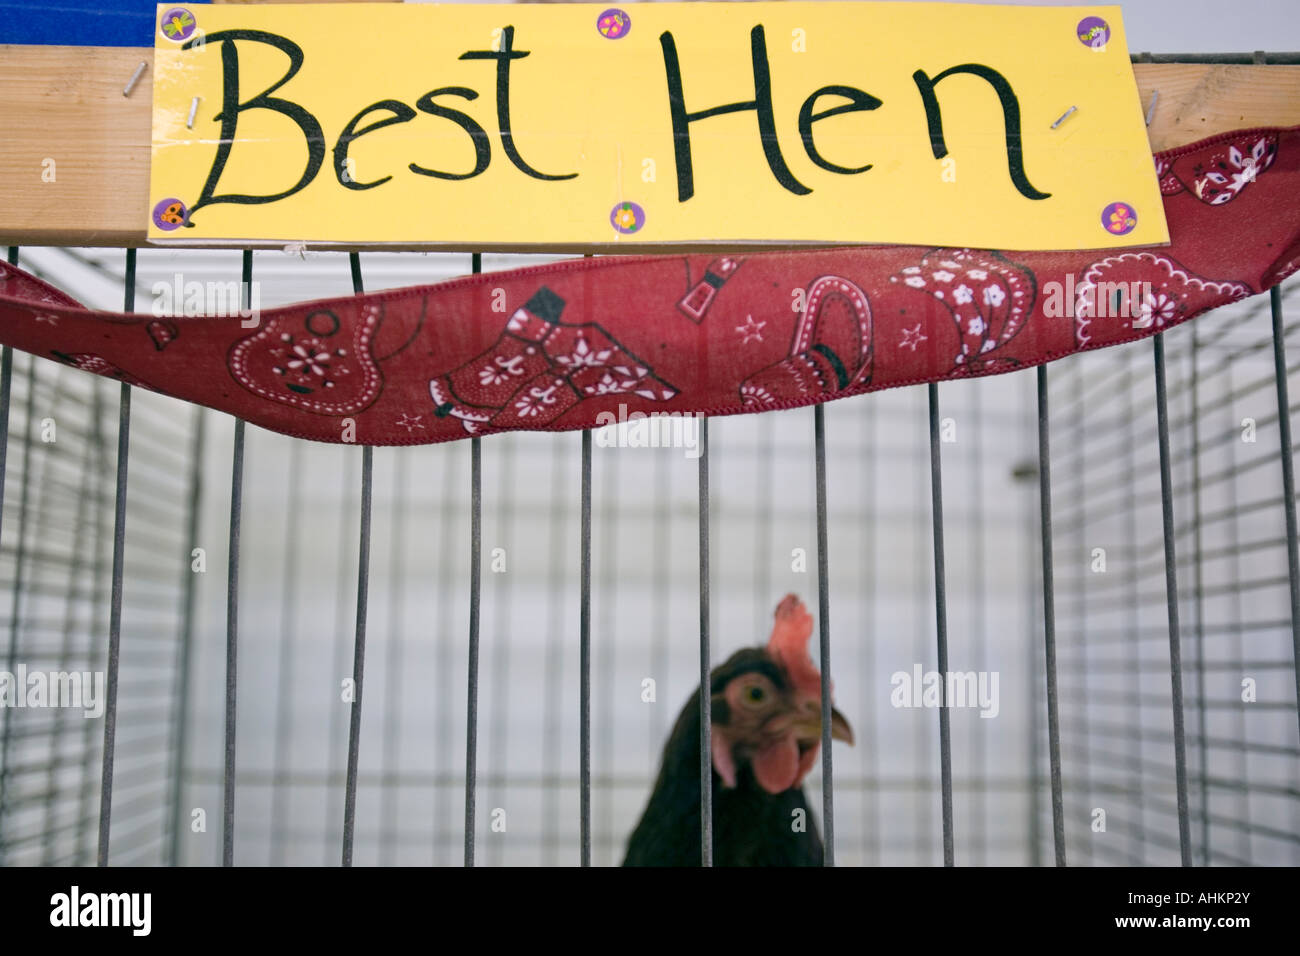 Best Hen presso il Champlain Valley Fair exposition in Essex Chittenden County Vermont Foto Stock